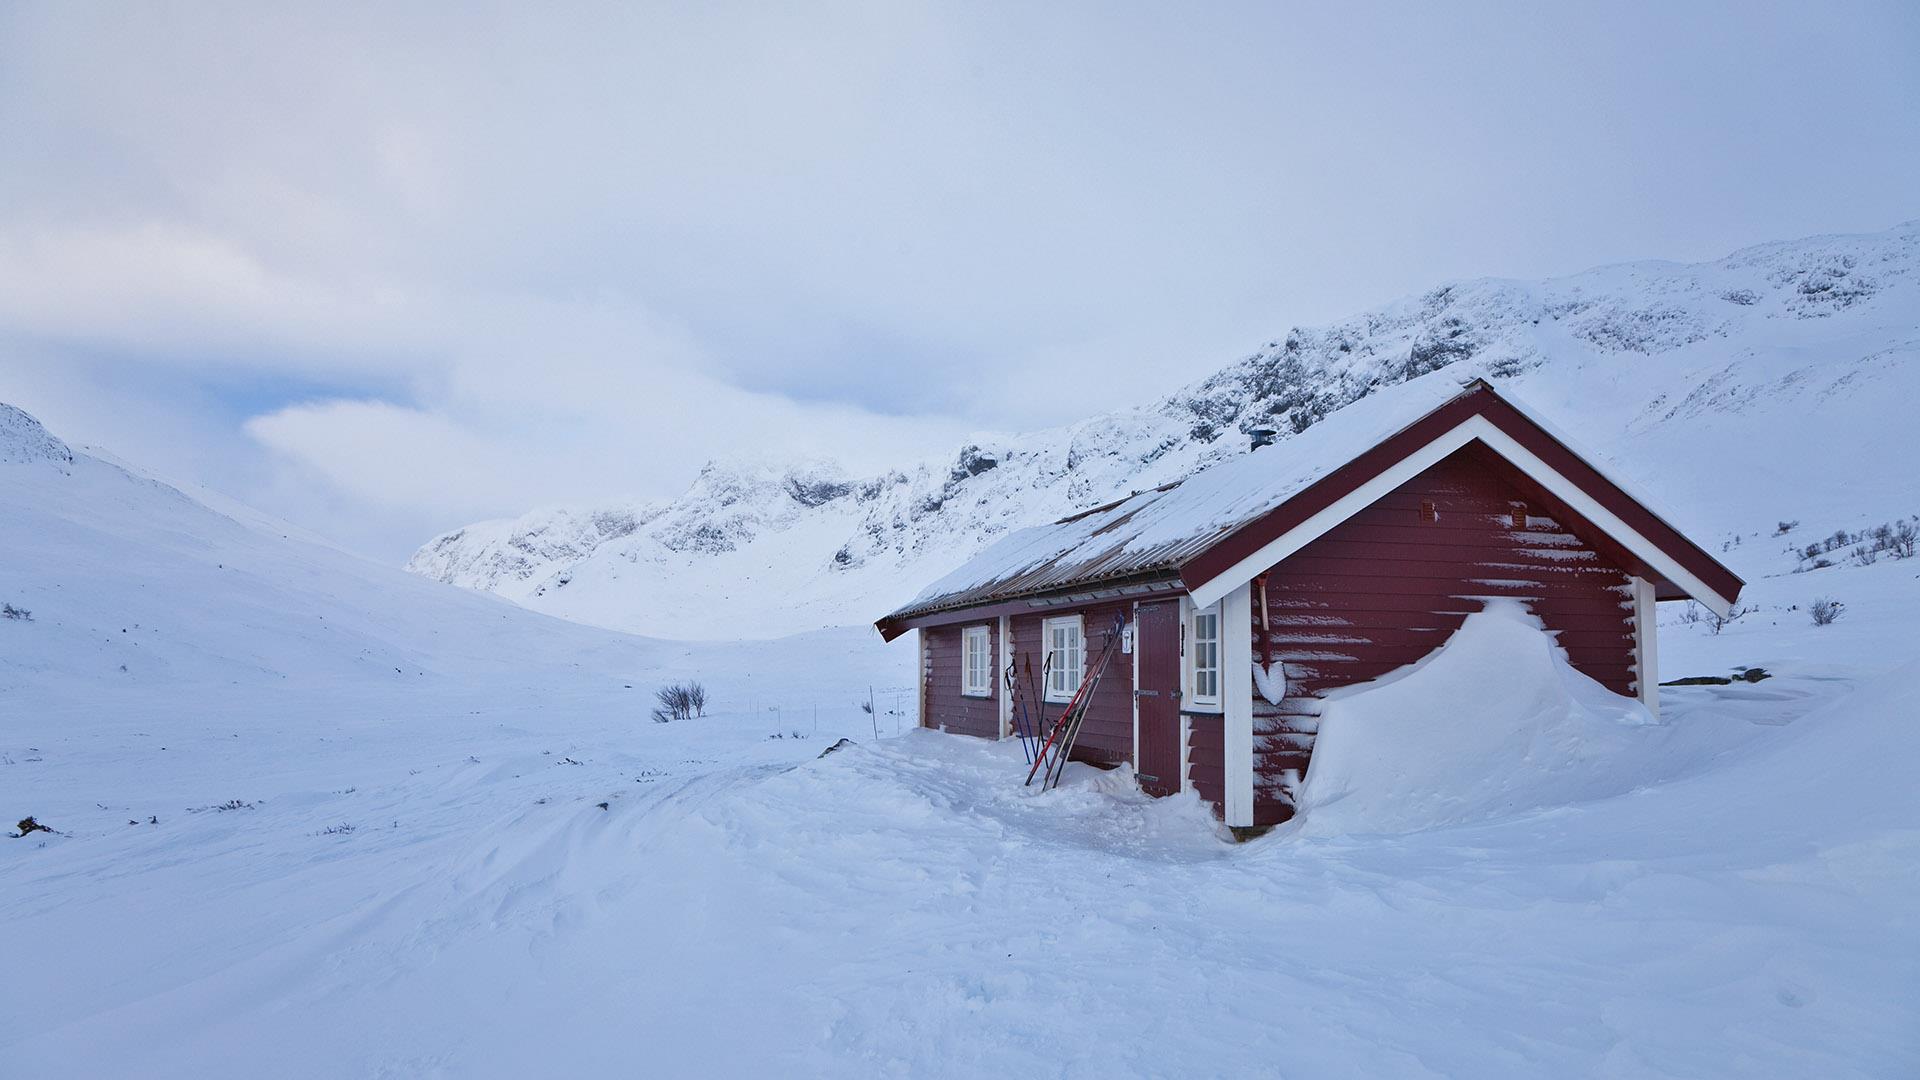 En mørkrød hytte i en fjelldal om vinteren. Flatt lys og grå himmel.